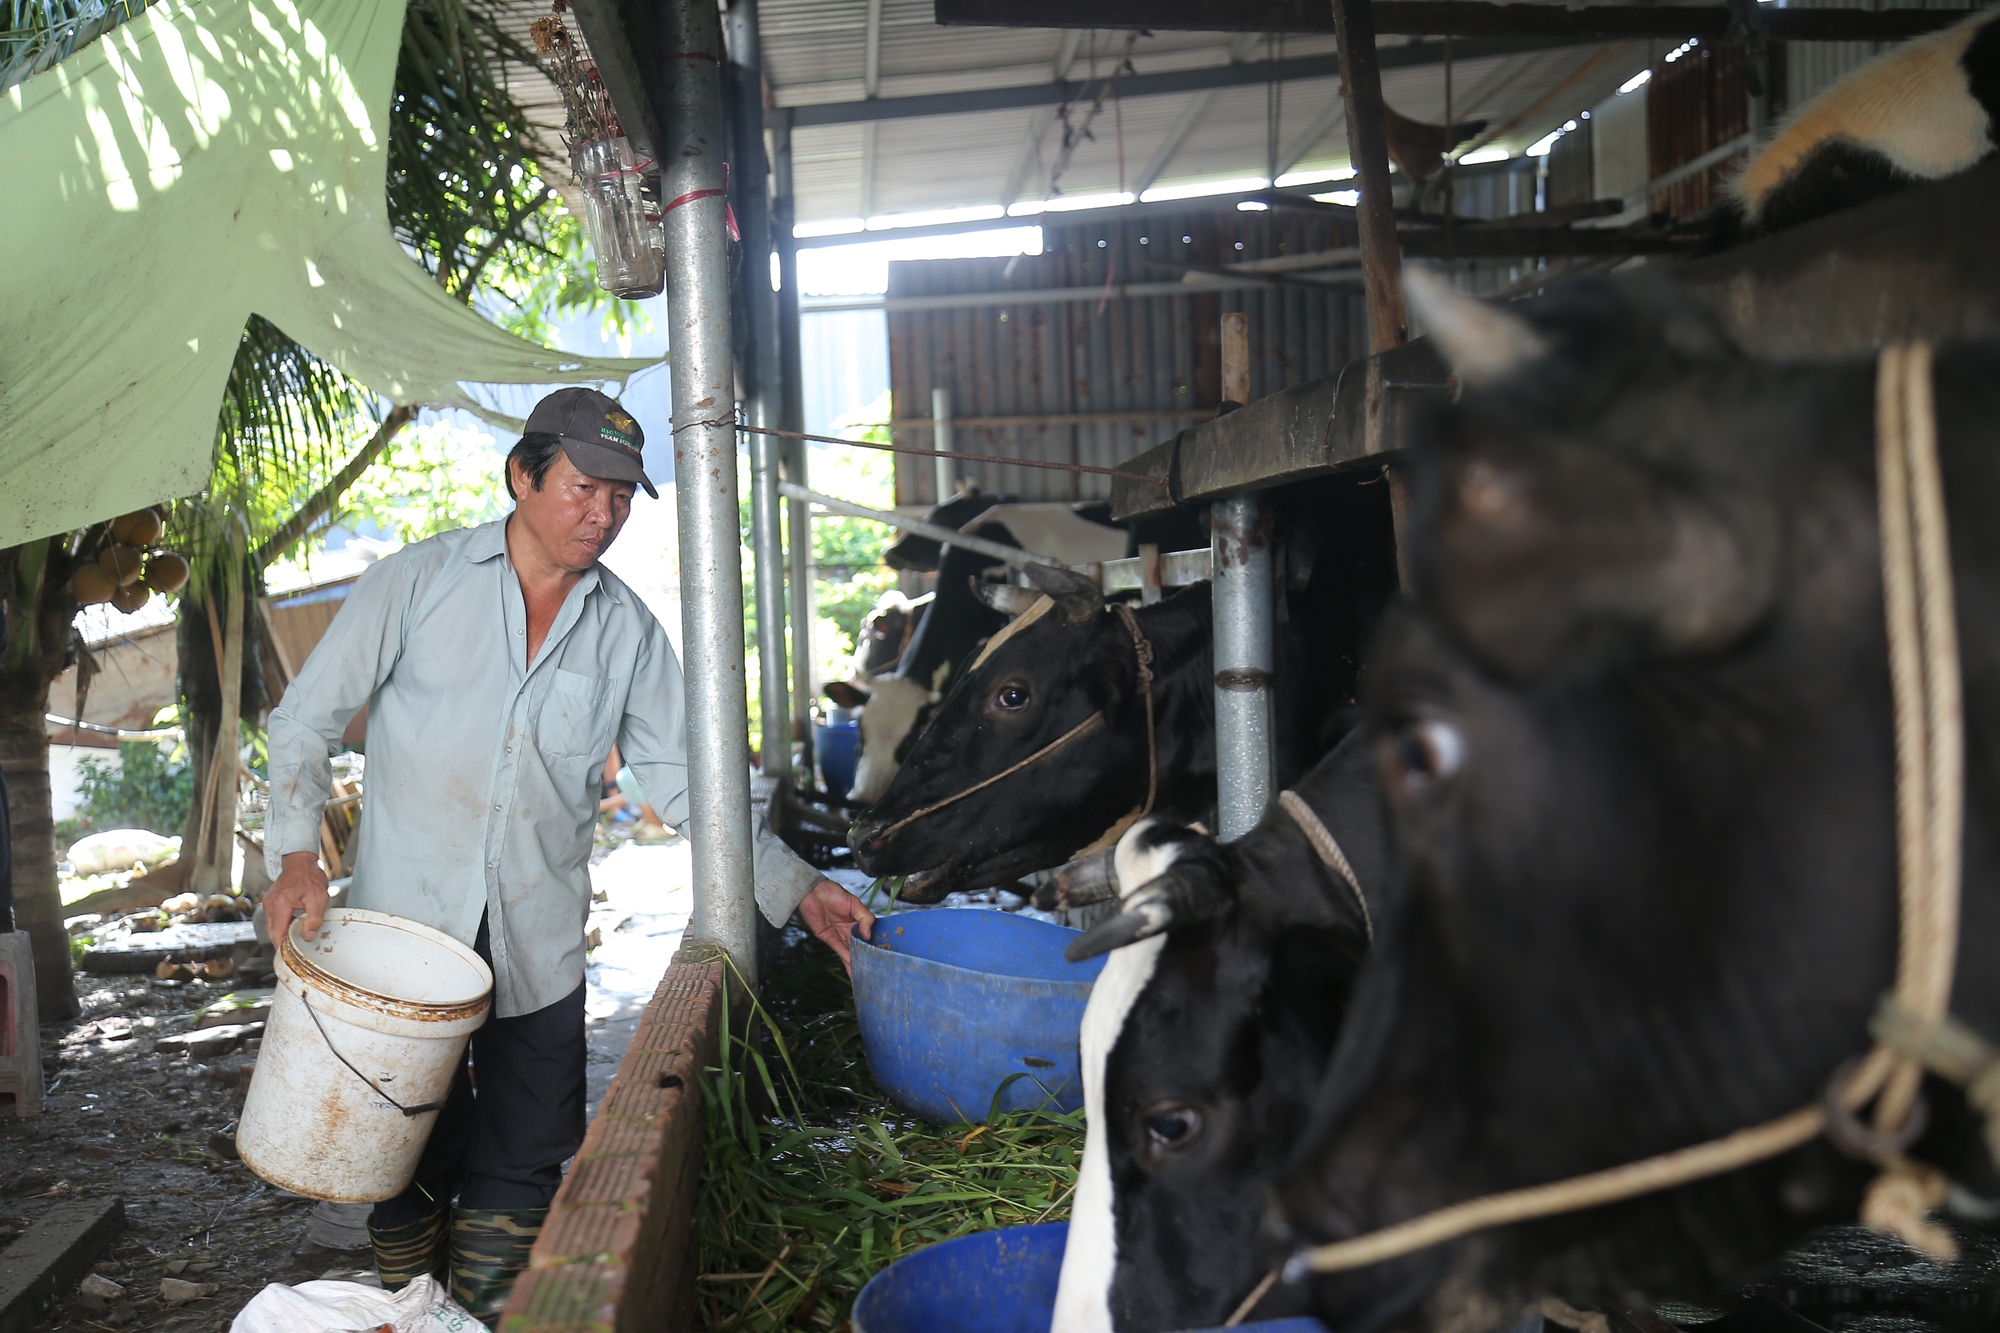 Thức ăn gia súc tăng cao, nông dân TP.HCM bán bò, tính bỏ nghề chăn nuôi - Ảnh 3.